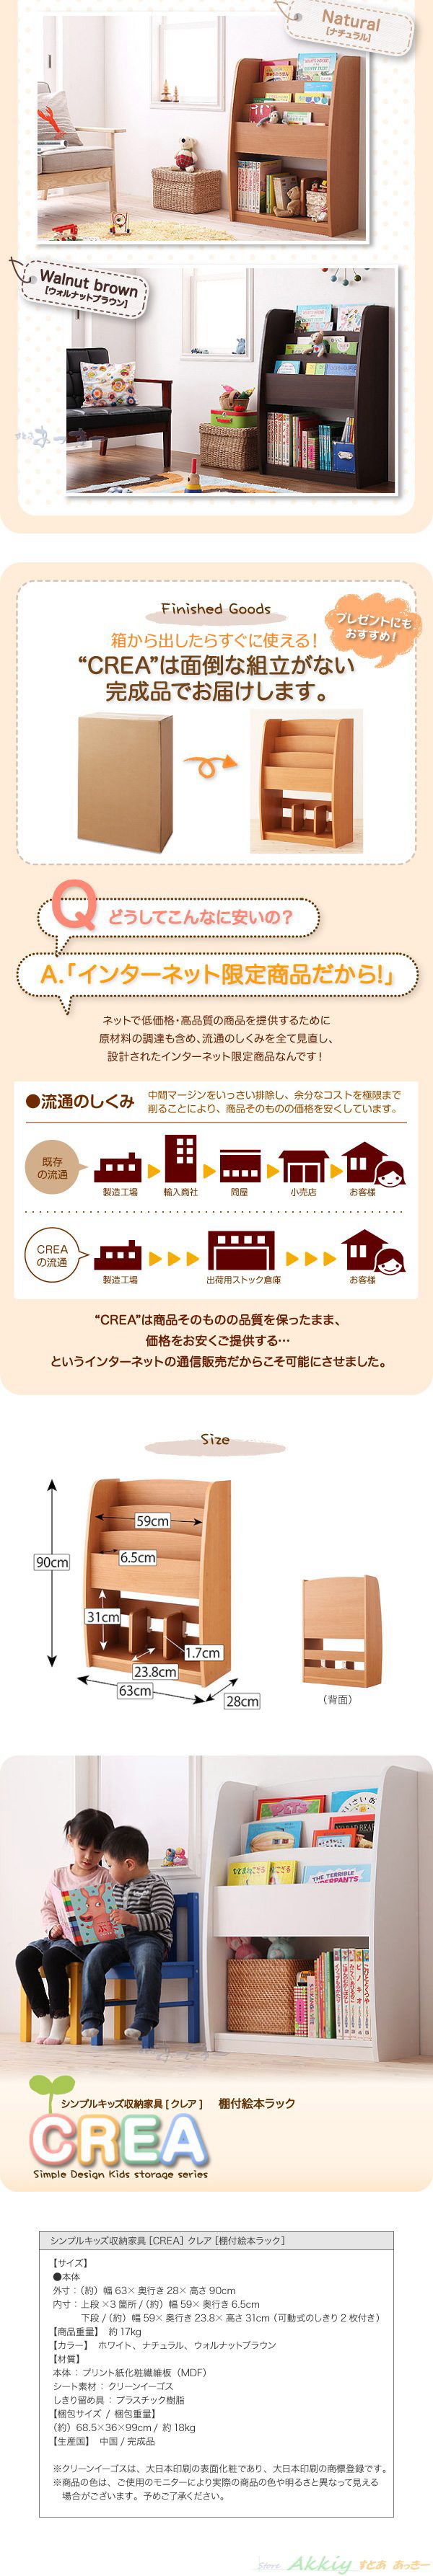 【超高品質】■CREA /ブラウン 幅63cm クレアシリーズ 本棚